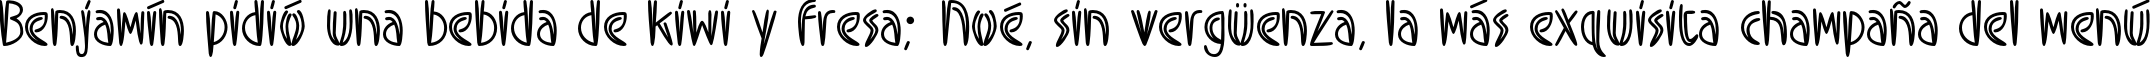 Пример написания шрифтом Swizzle текста на испанском